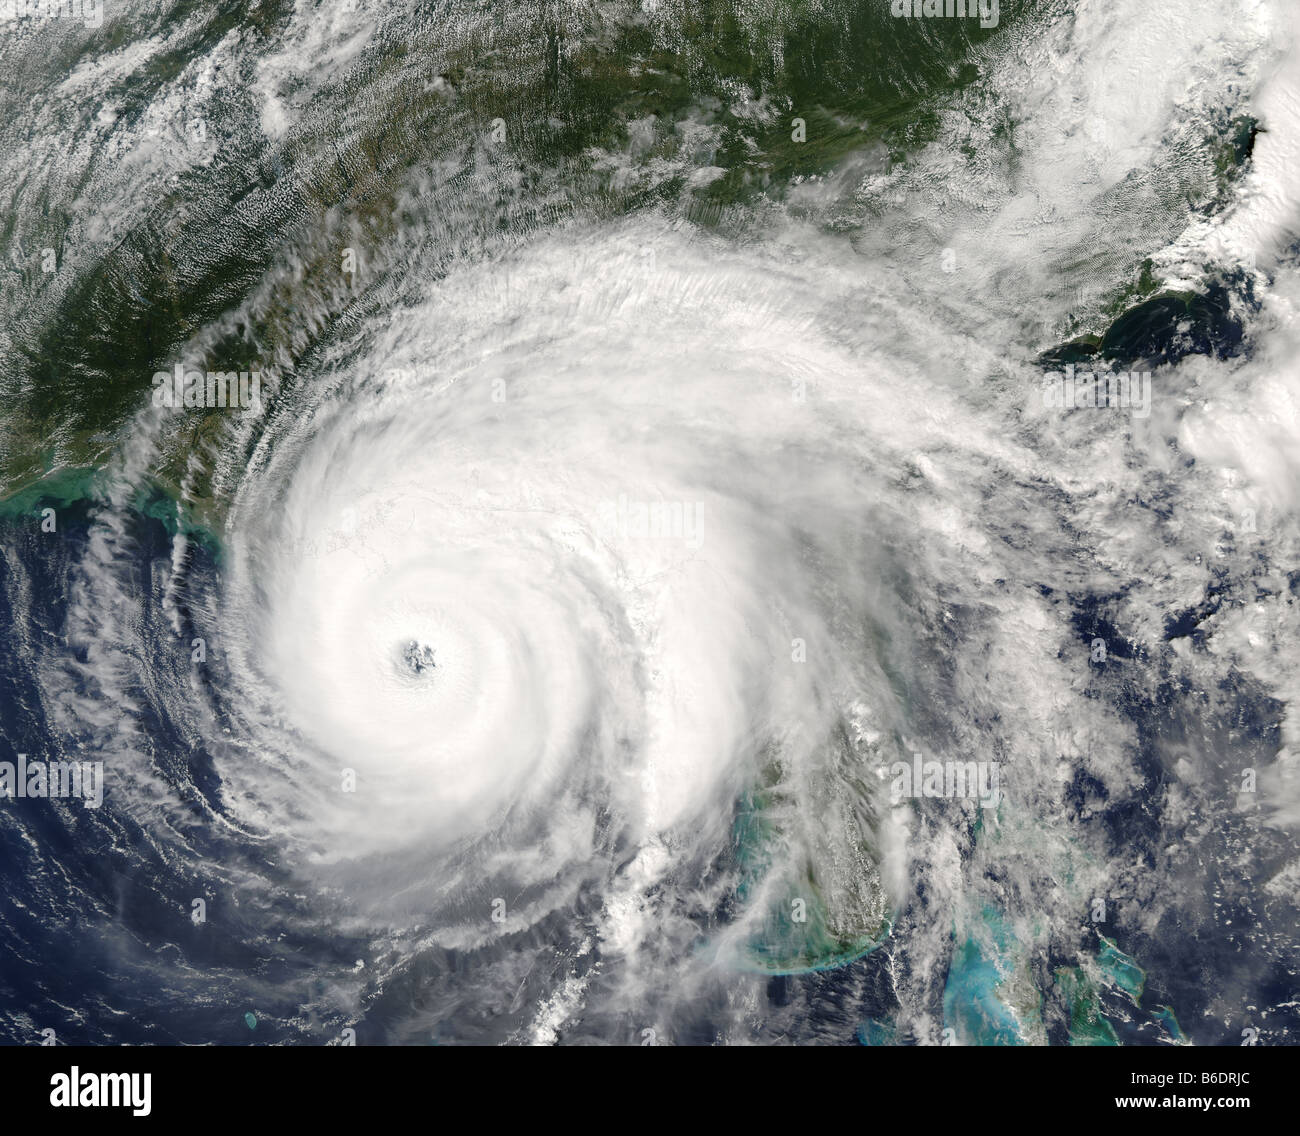 Hurrikan Ivan über dem Golf von Mexiko, on15th September 2004 um 1345 Uhr GMT. Hurrikane sind enorm Sturmsysteme drehen. Stockfoto